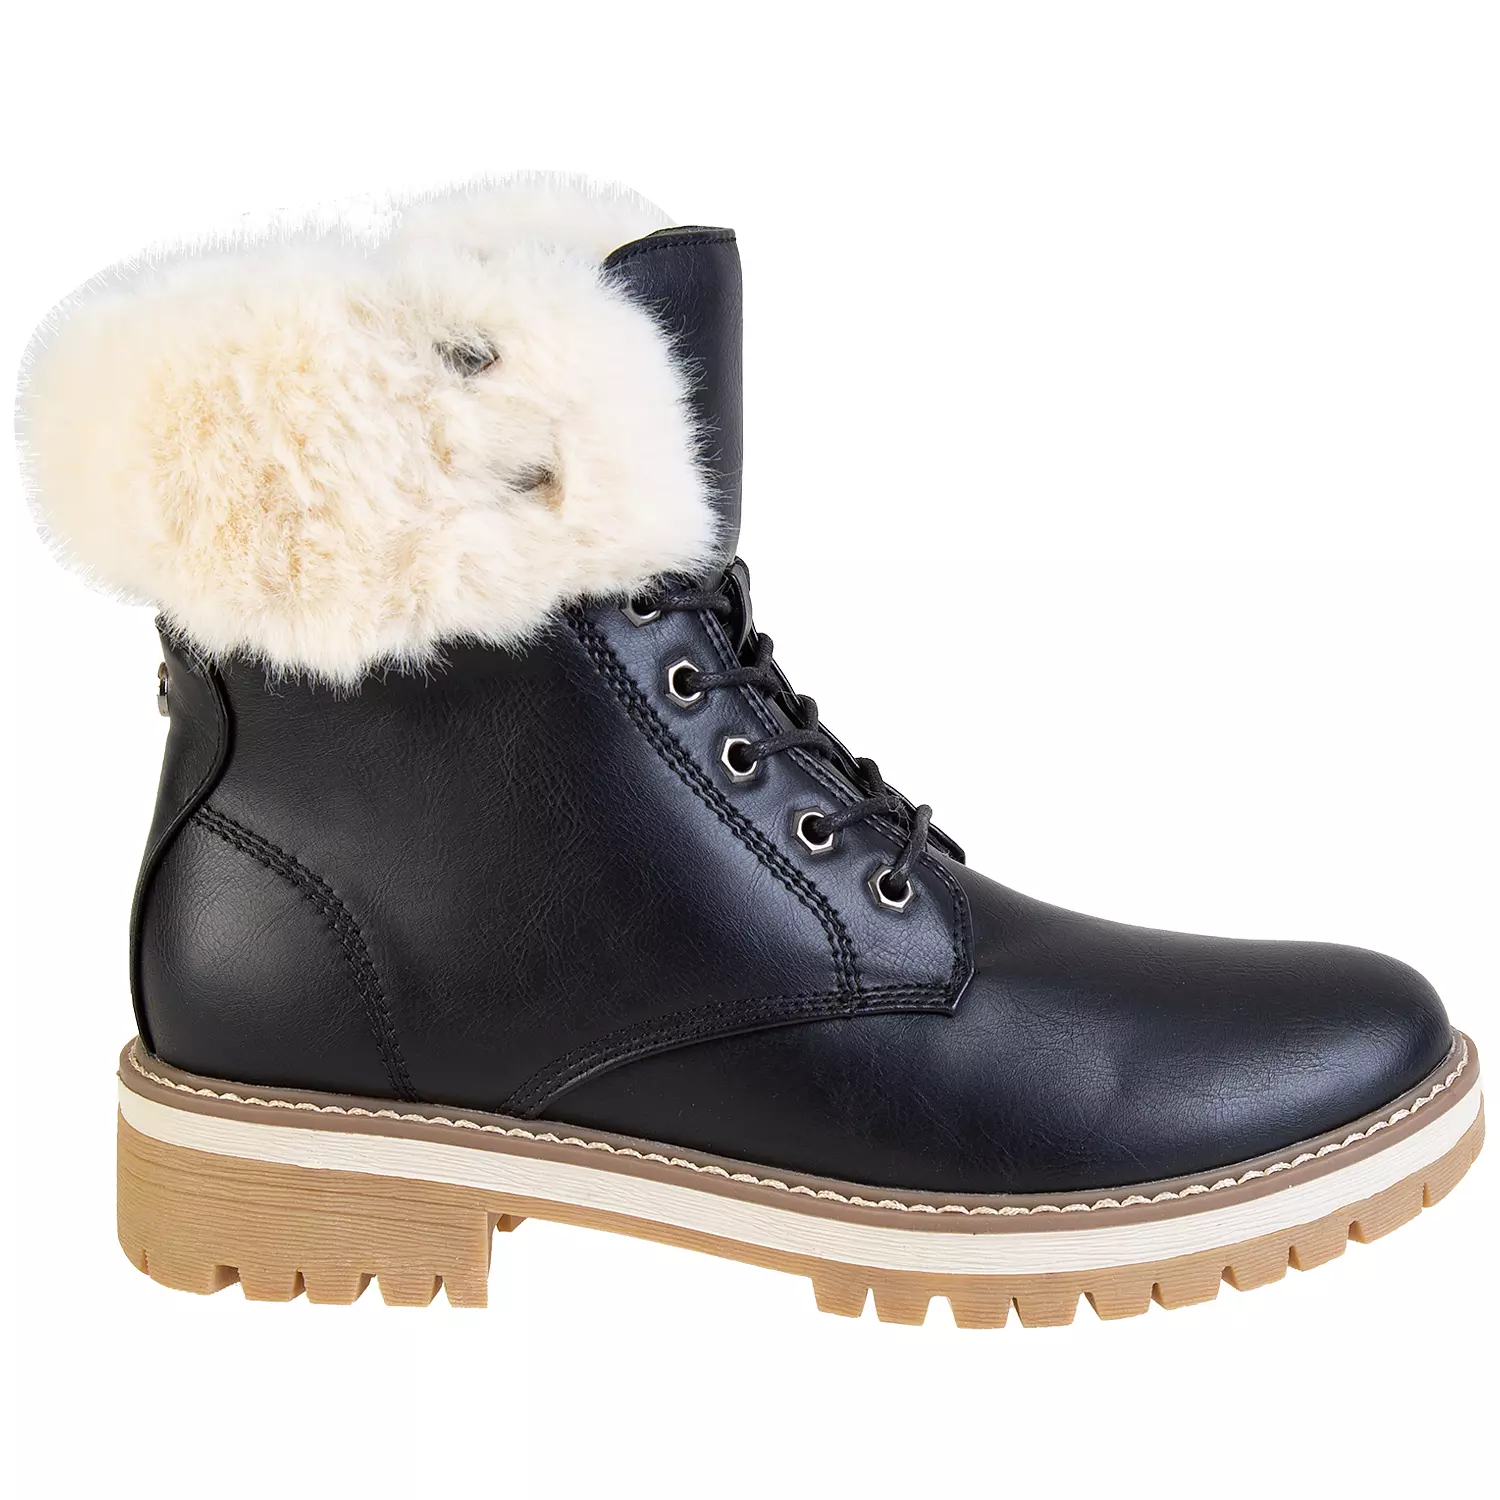 Lace-up faux fur trim fashion combat boots, black, size 7